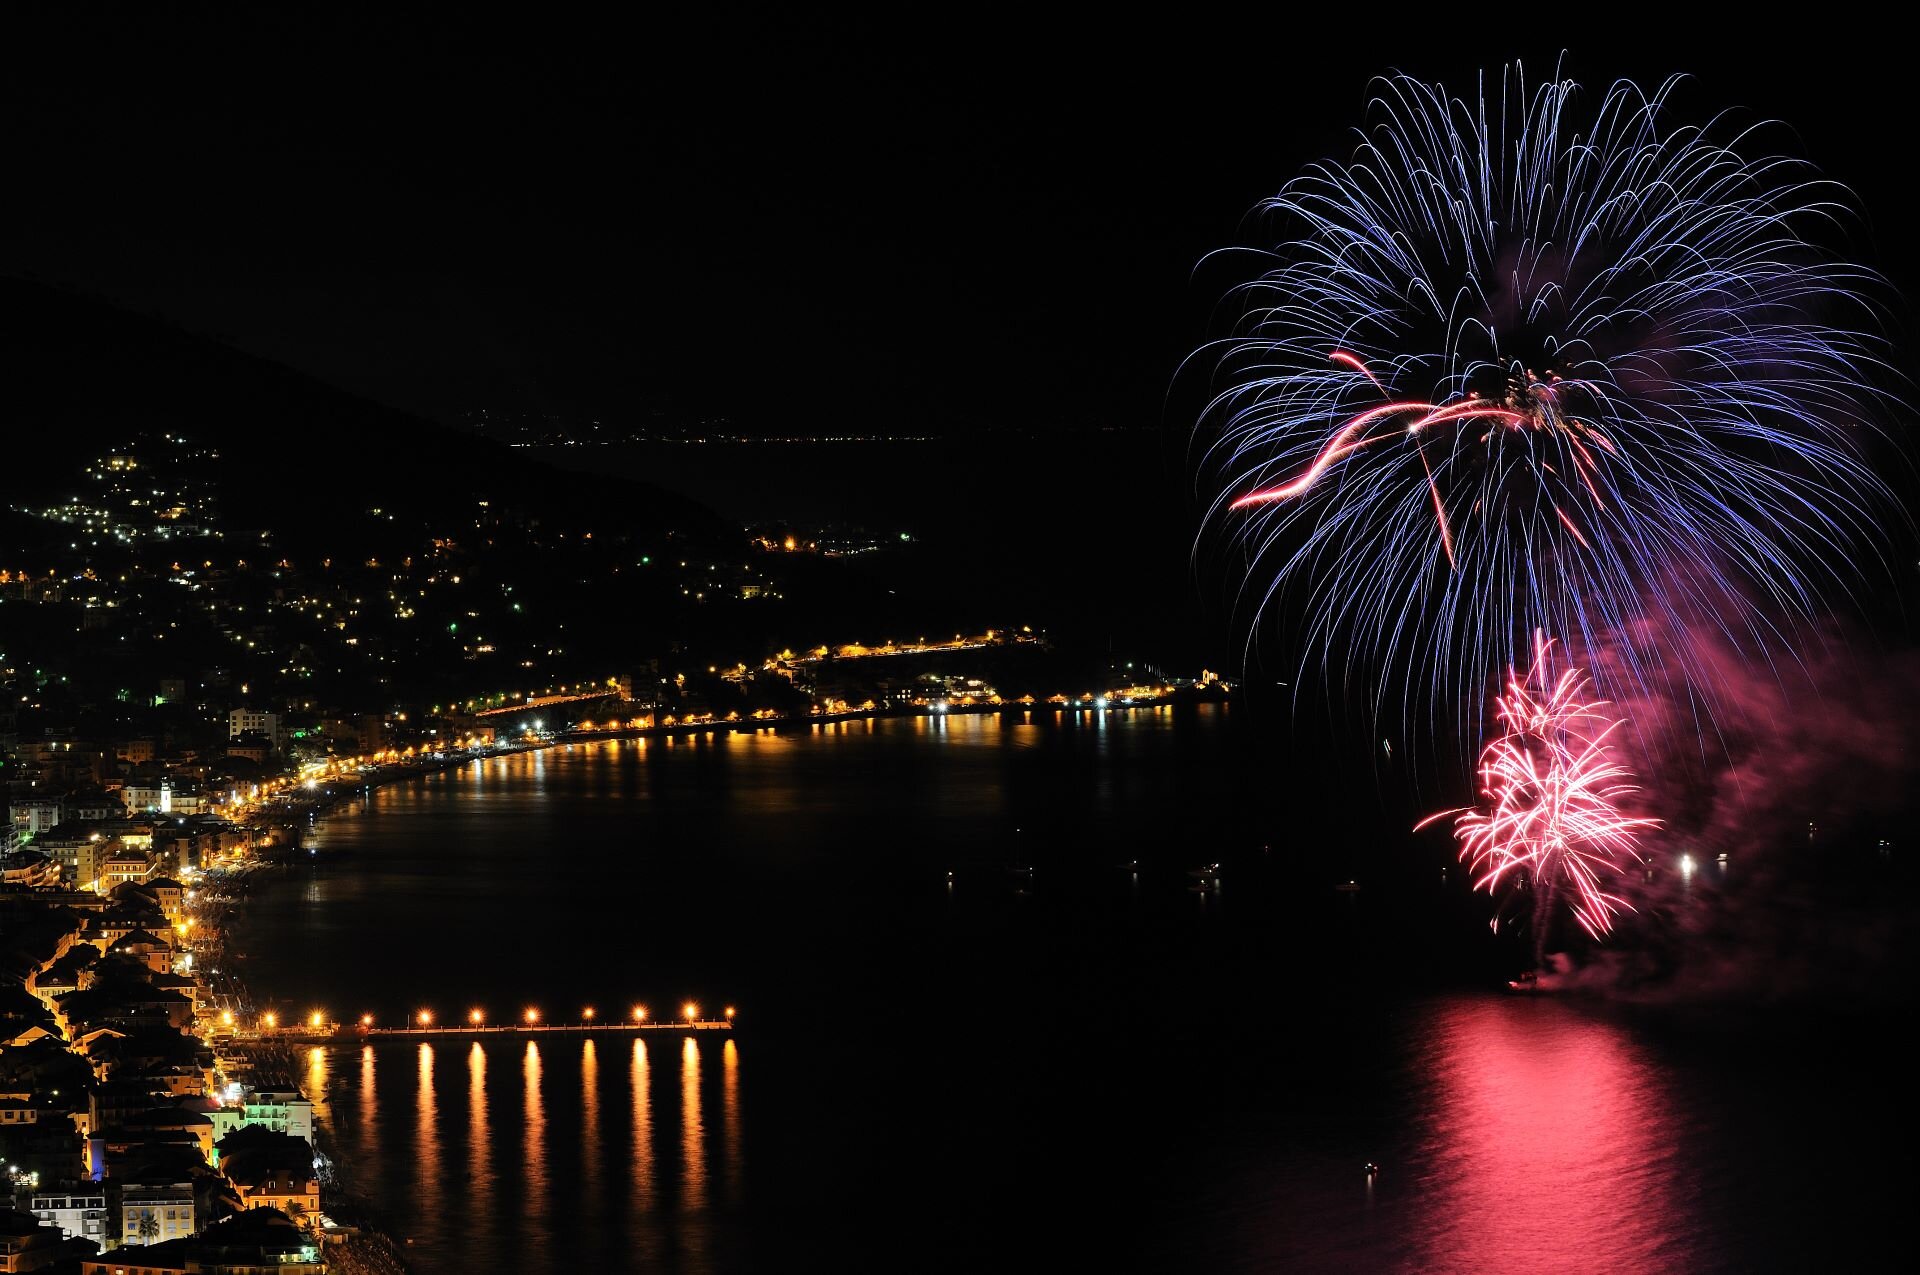 I migliori eventi in Liguria li trovi ad Alassio | © Archivio visitalassio.com